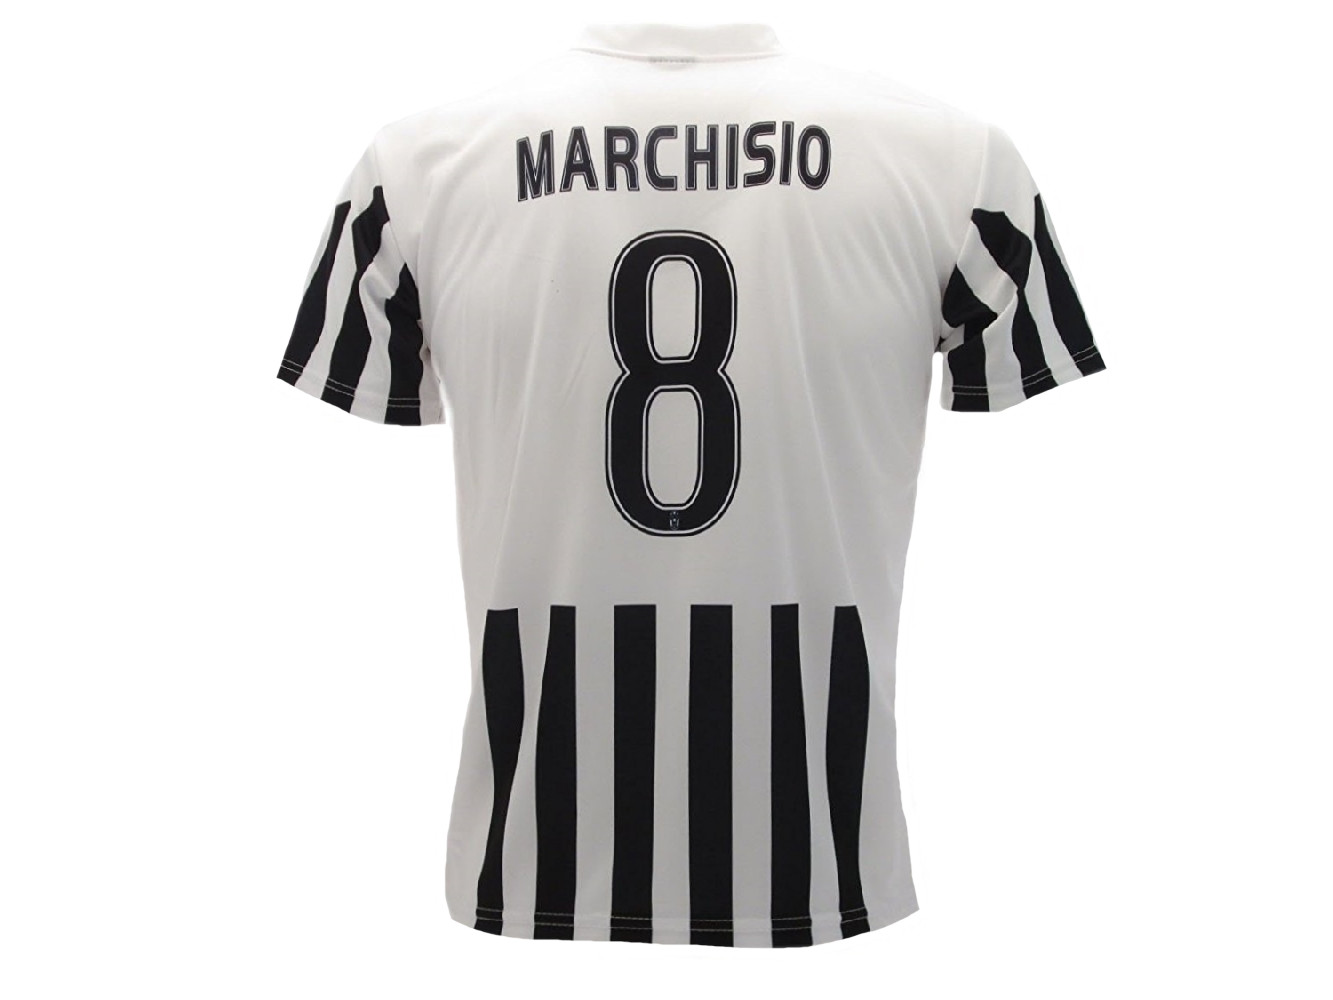 Maglia Calcio Adulto Juventus Bianconera Replica Ufficiale Marchisio PS 22210 | Pelusciamo.com